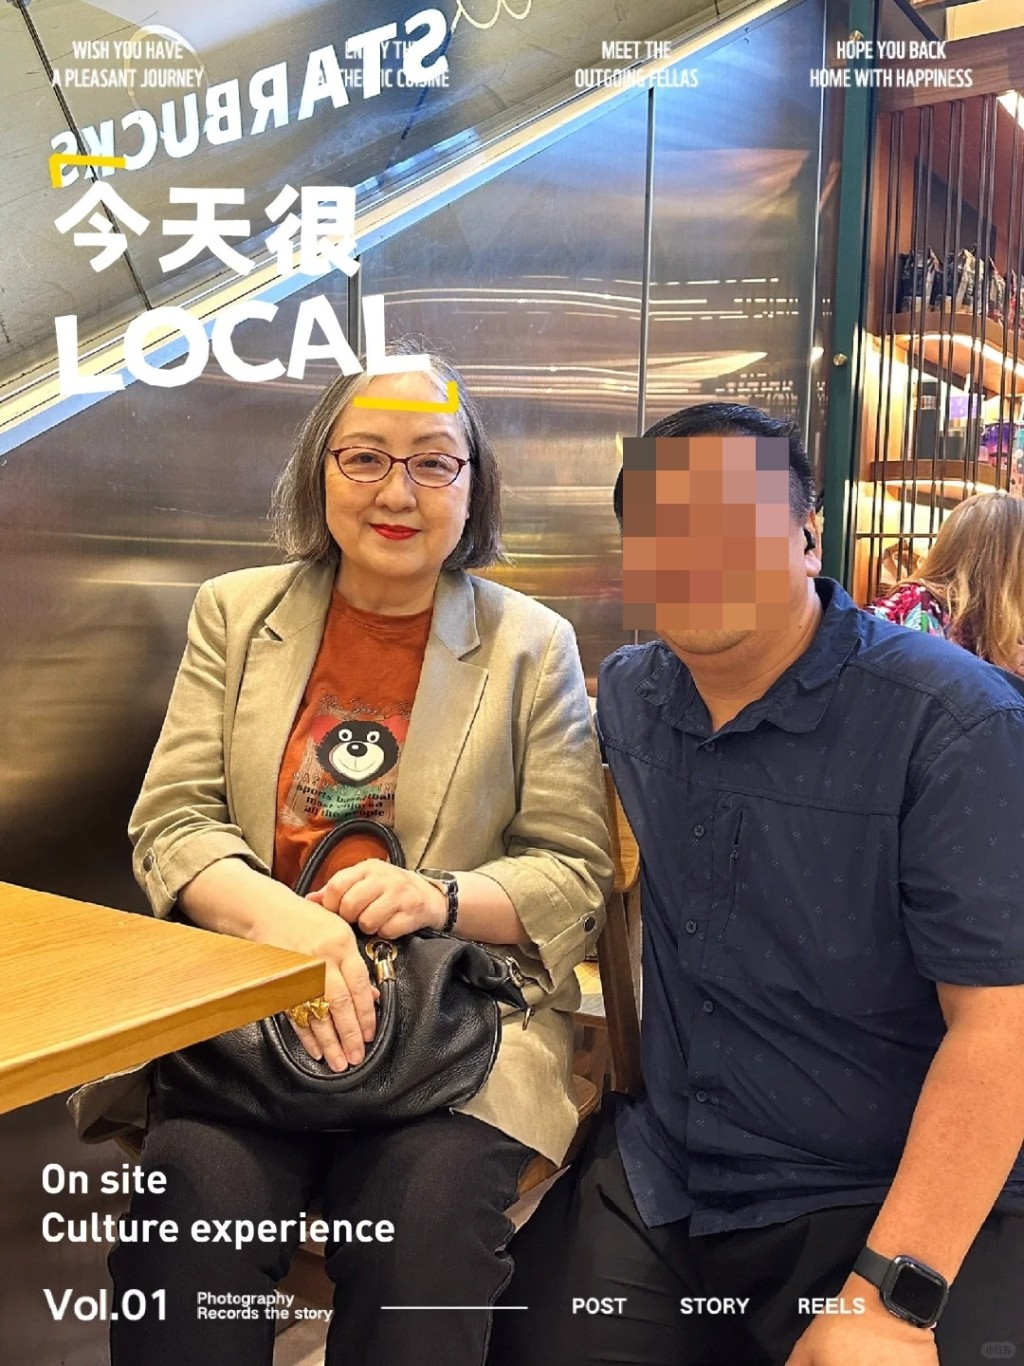 有網民在社交網上載兩張分別與兩人的合照，指在九龍灣驚喜偶遇盧宛茵和黎彼得在嘆咖啡。